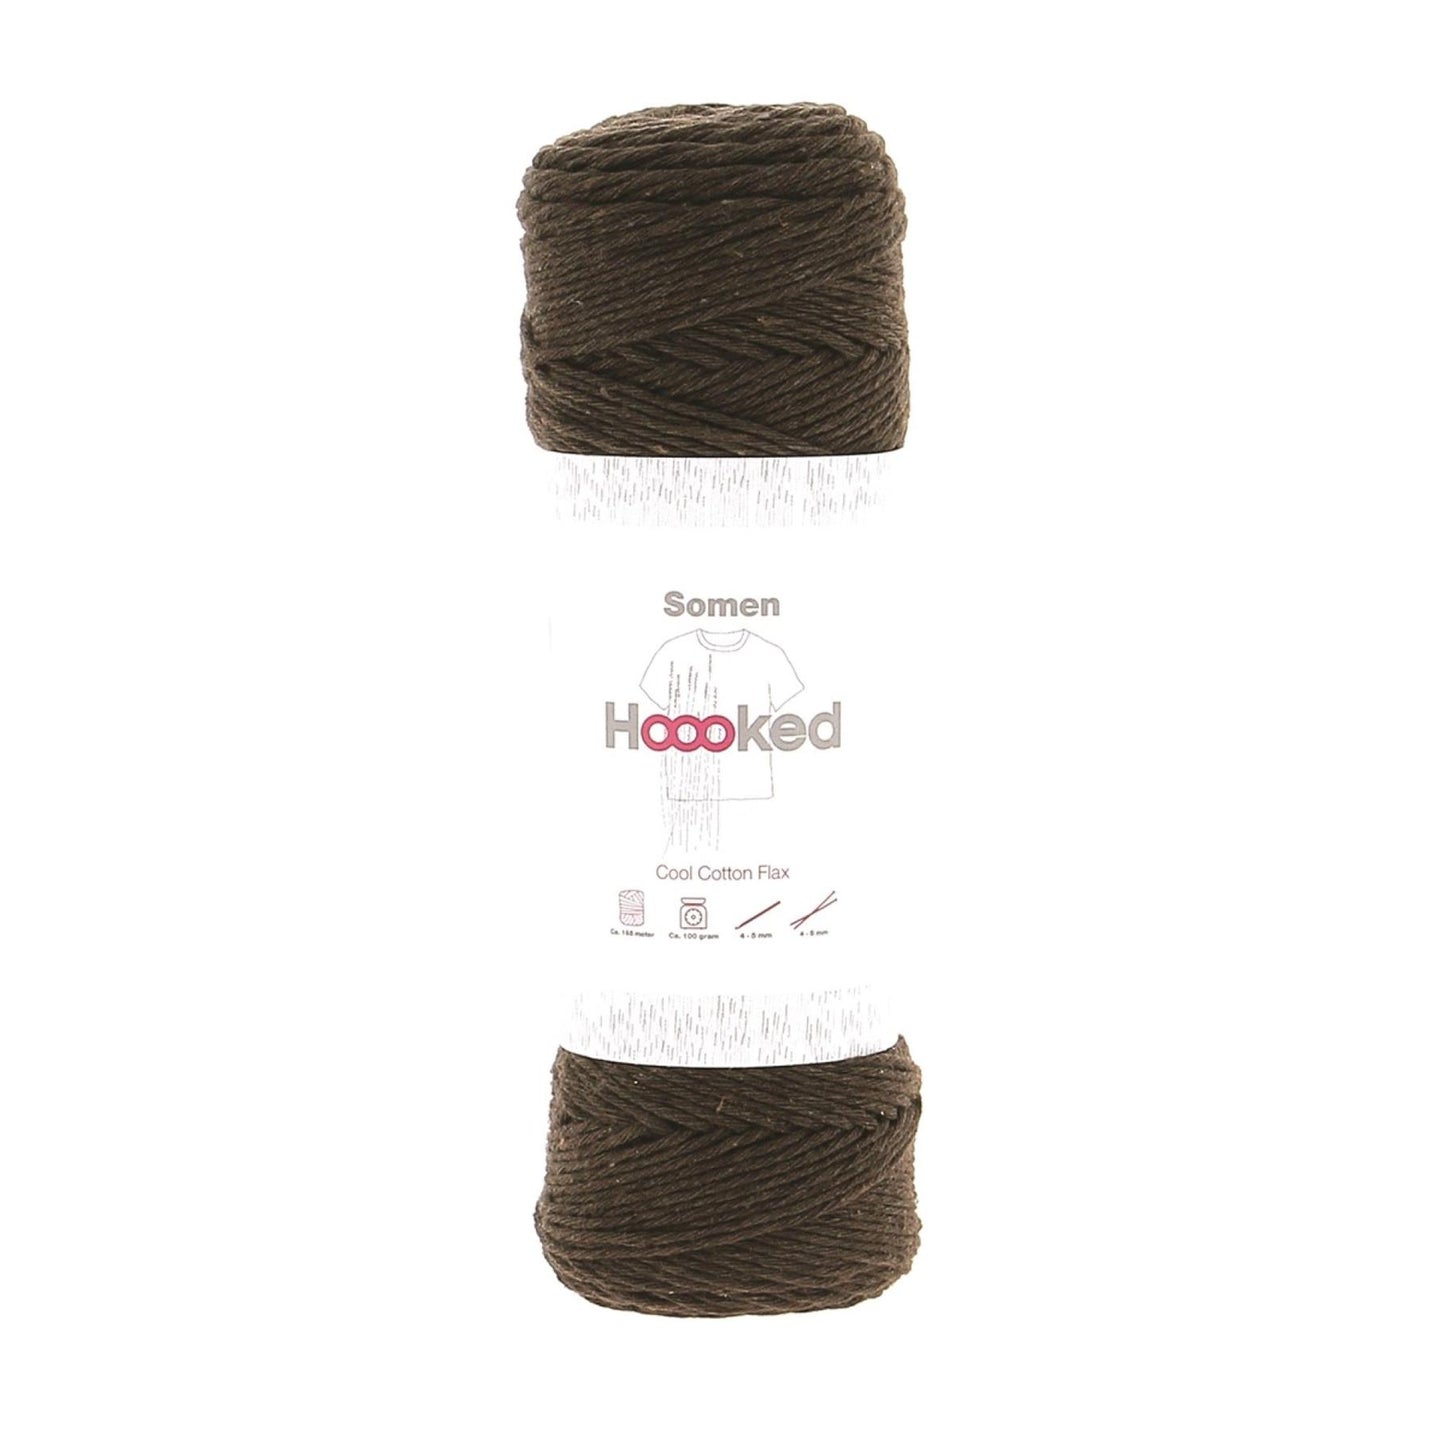 Hoooked Somen Espresso Brown Cotton/Linen Blend Yarn - 165M 100g